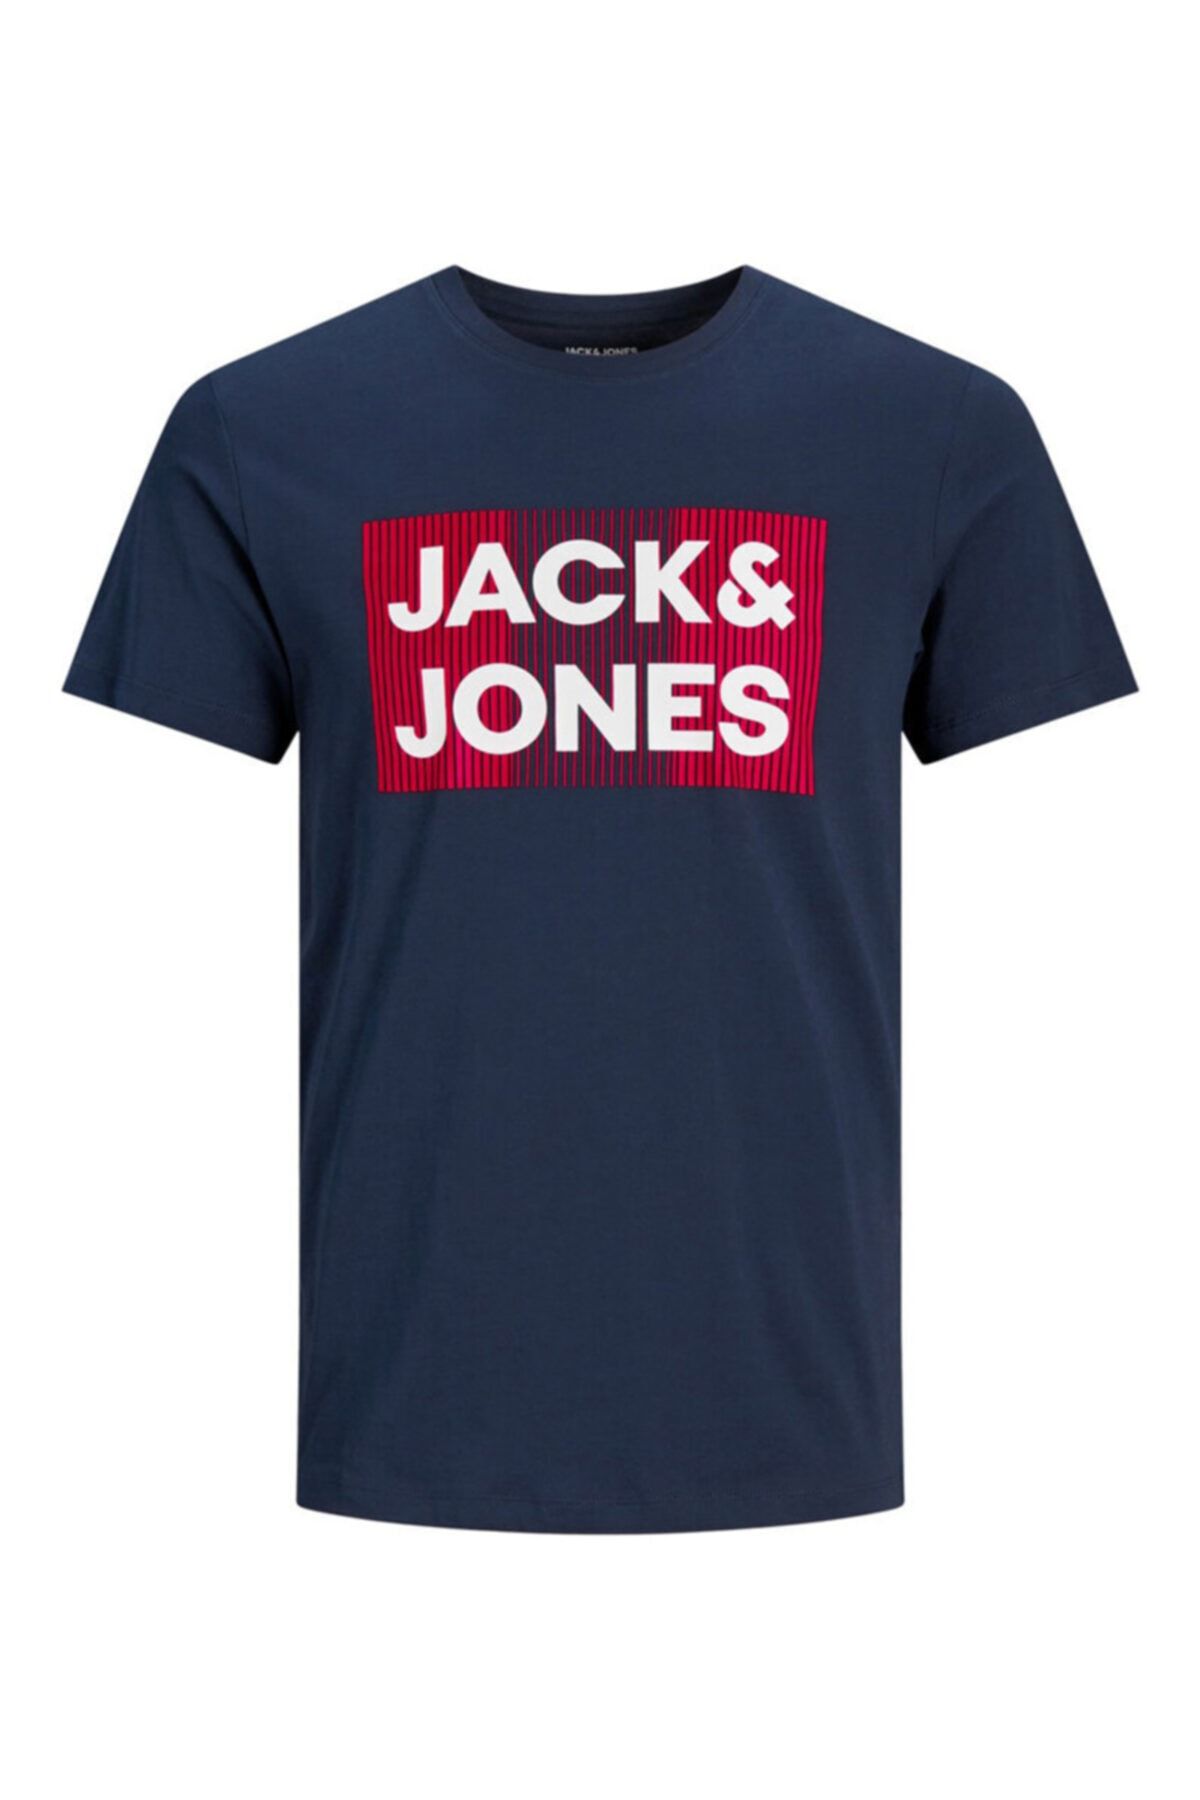 Jack & Jones Jack Jones Logo Erkek Tişört